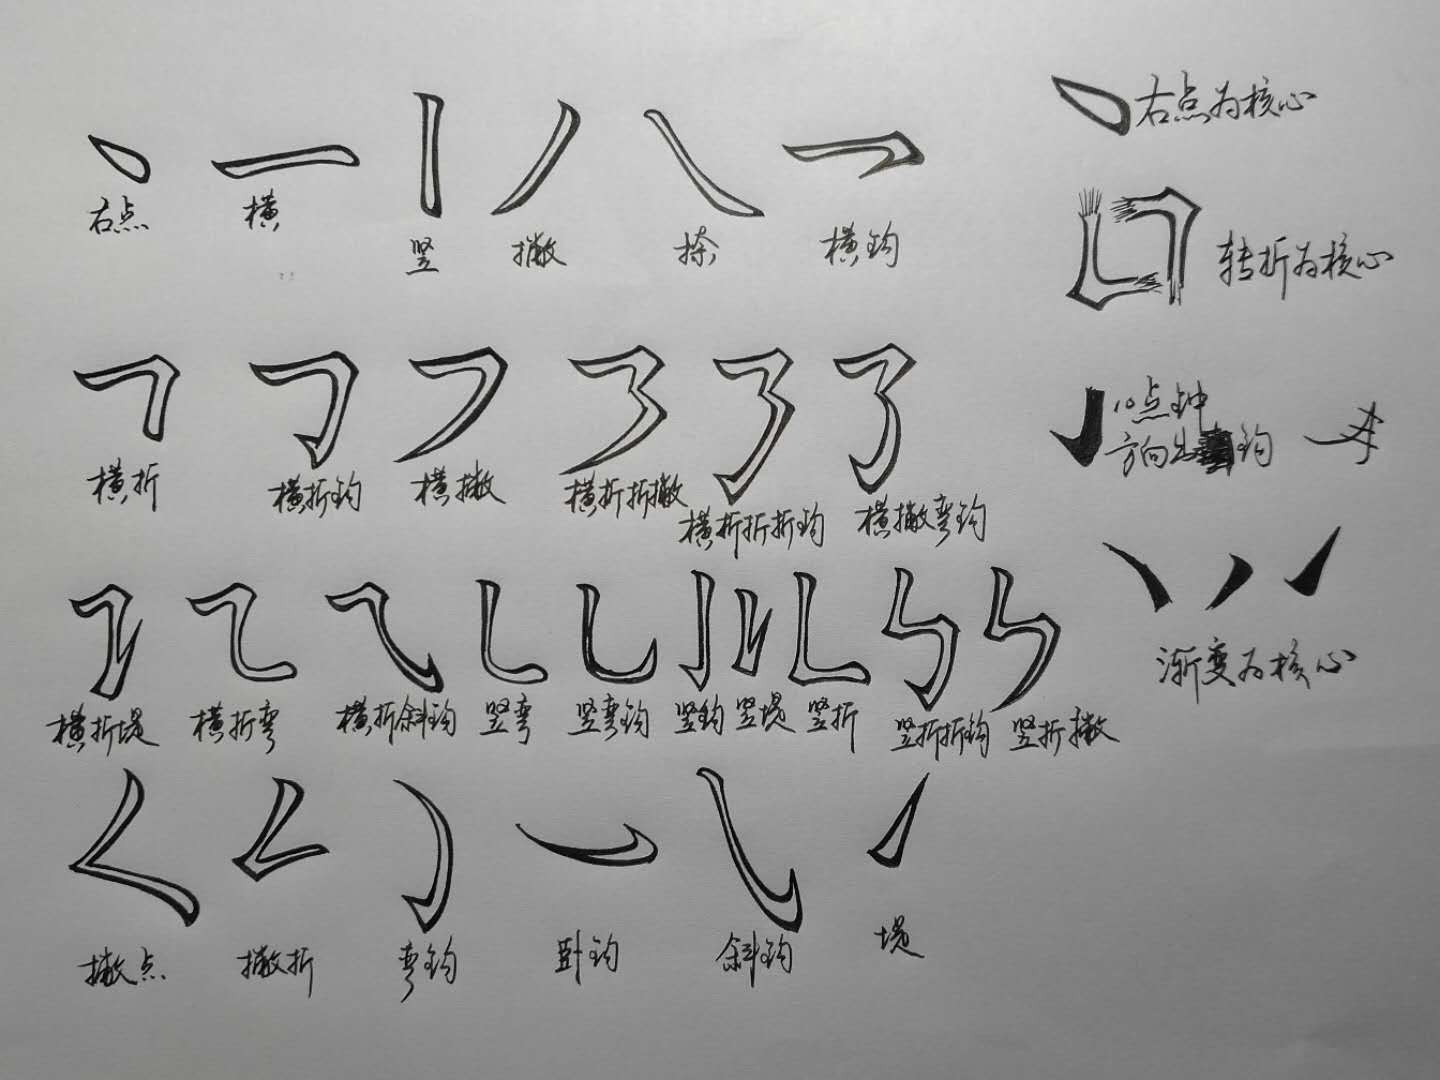 基本笔画是构成汉字的唯一单位,基本笔画是形成笔法的唯一基石,我们